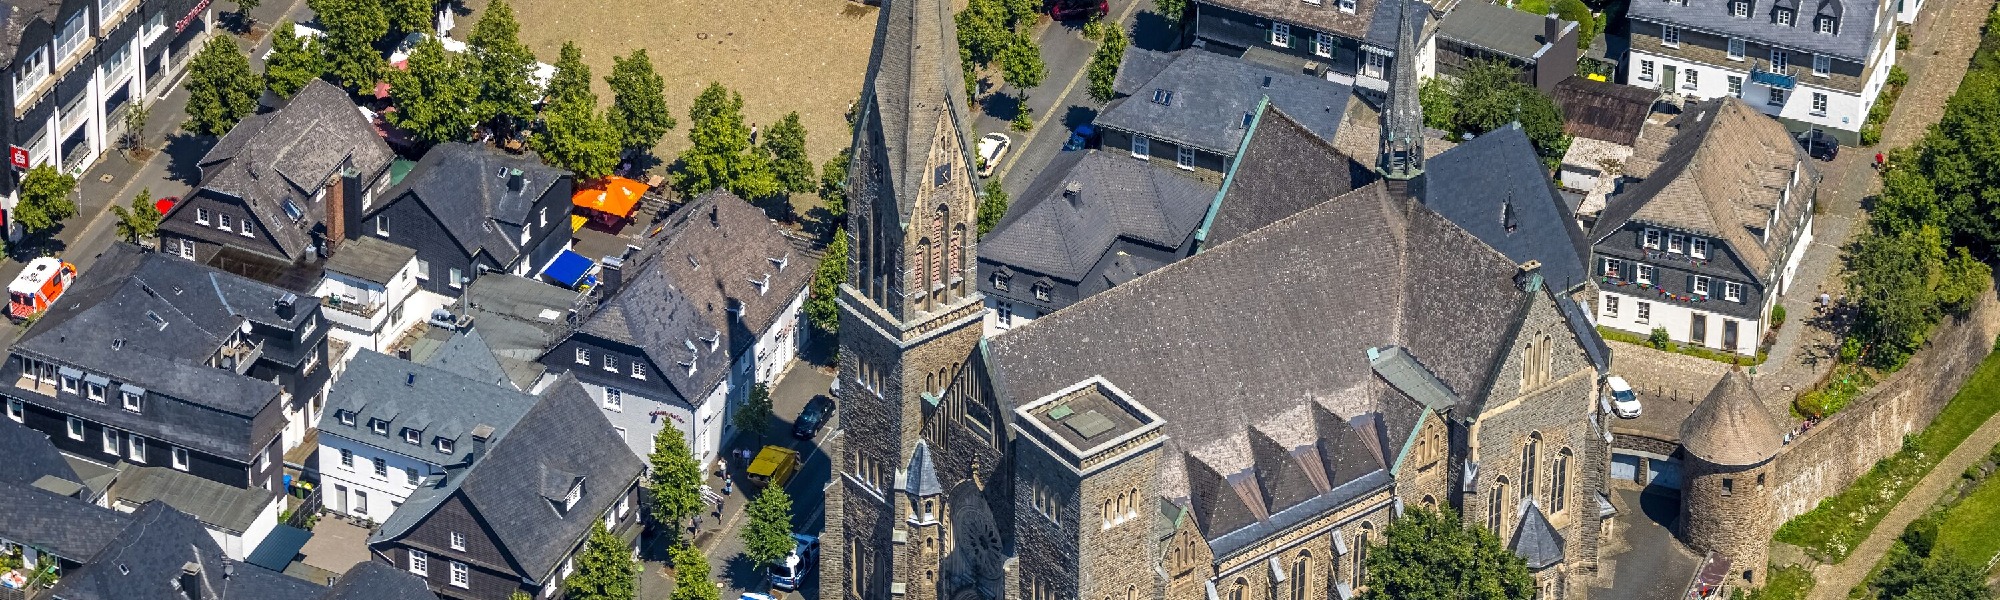 Luftbild der Kirche St. Martinus in Olpe.